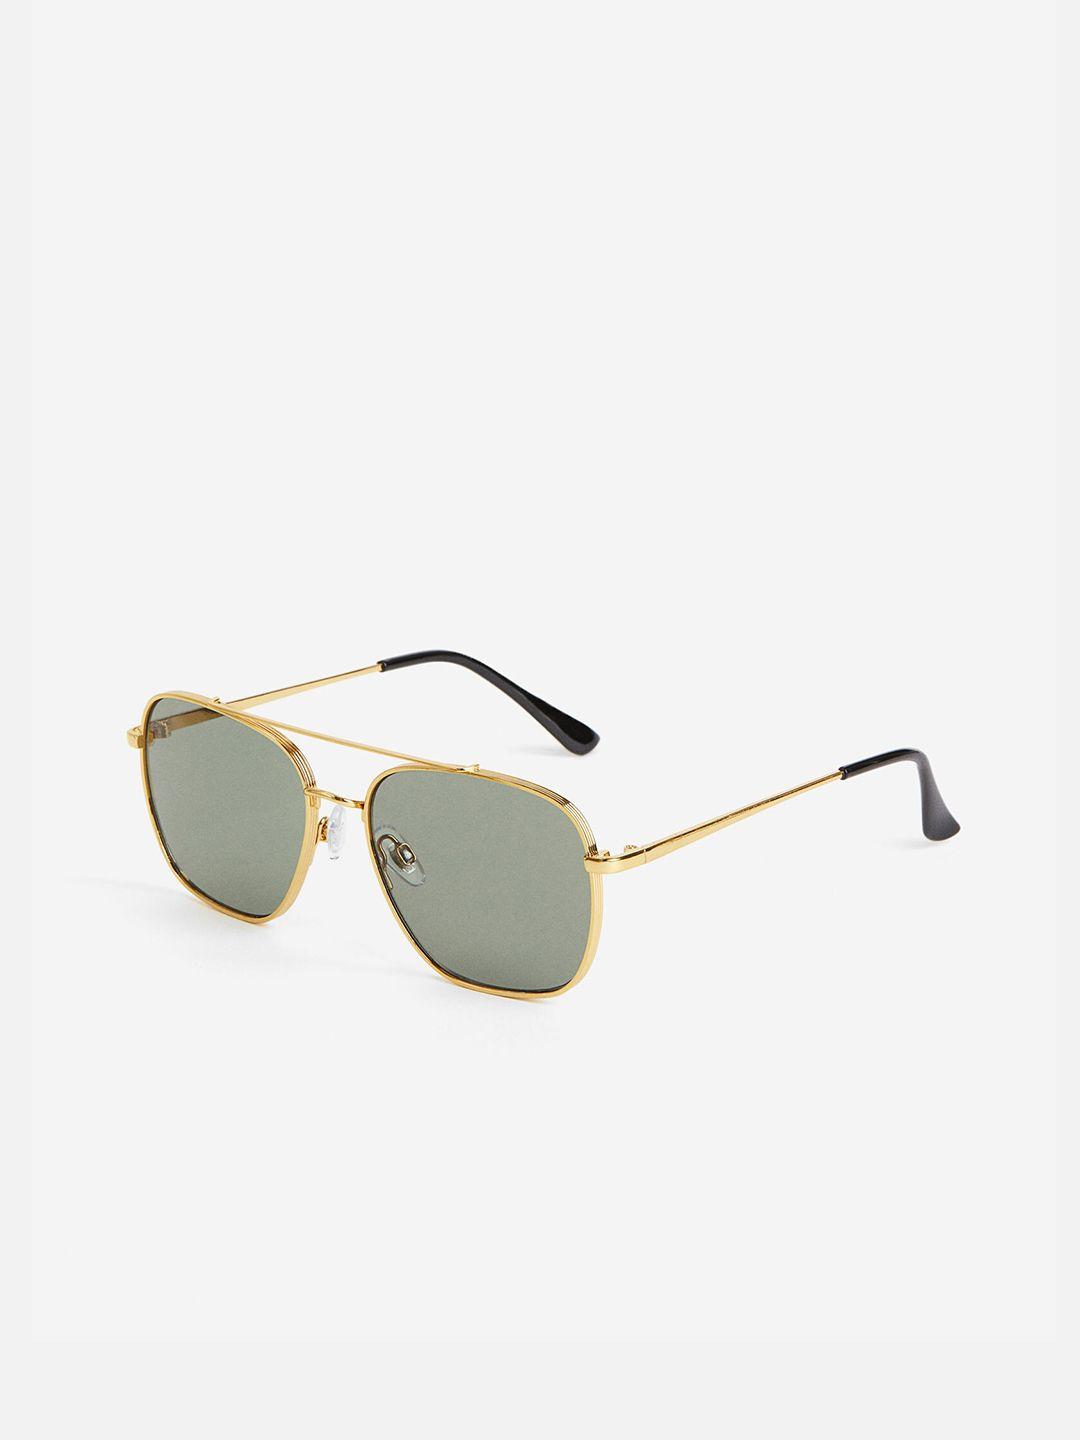 h&m-women-aviator-style-sunglasses